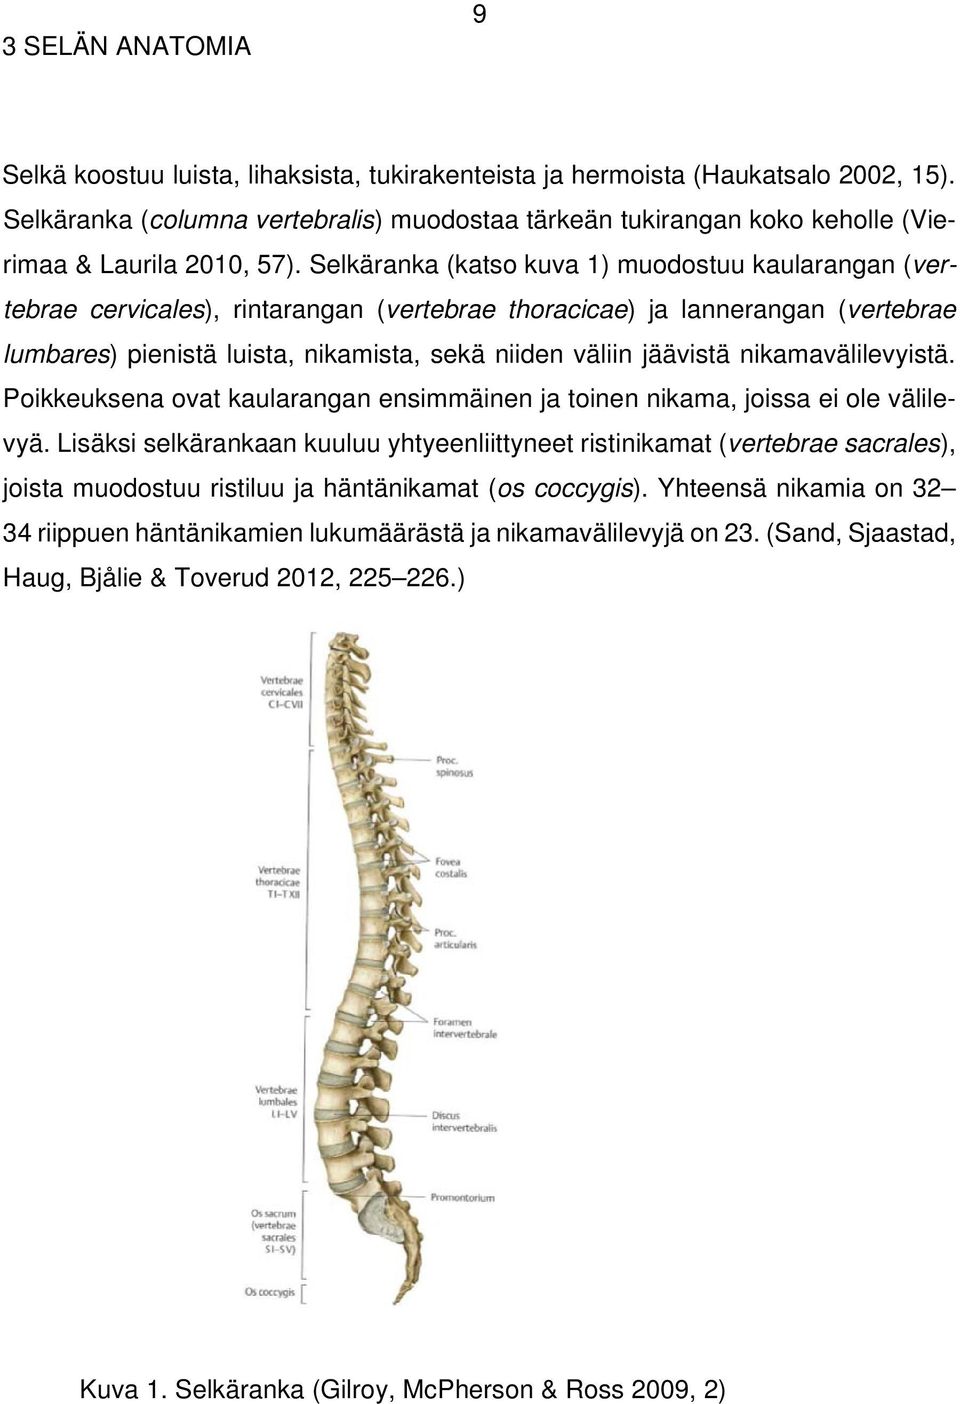 Selkäranka (katso kuva 1) muodostuu kaularangan (vertebrae cervicales), rintarangan (vertebrae thoracicae) ja lannerangan (vertebrae lumbares) pienistä luista, nikamista, sekä niiden väliin jäävistä